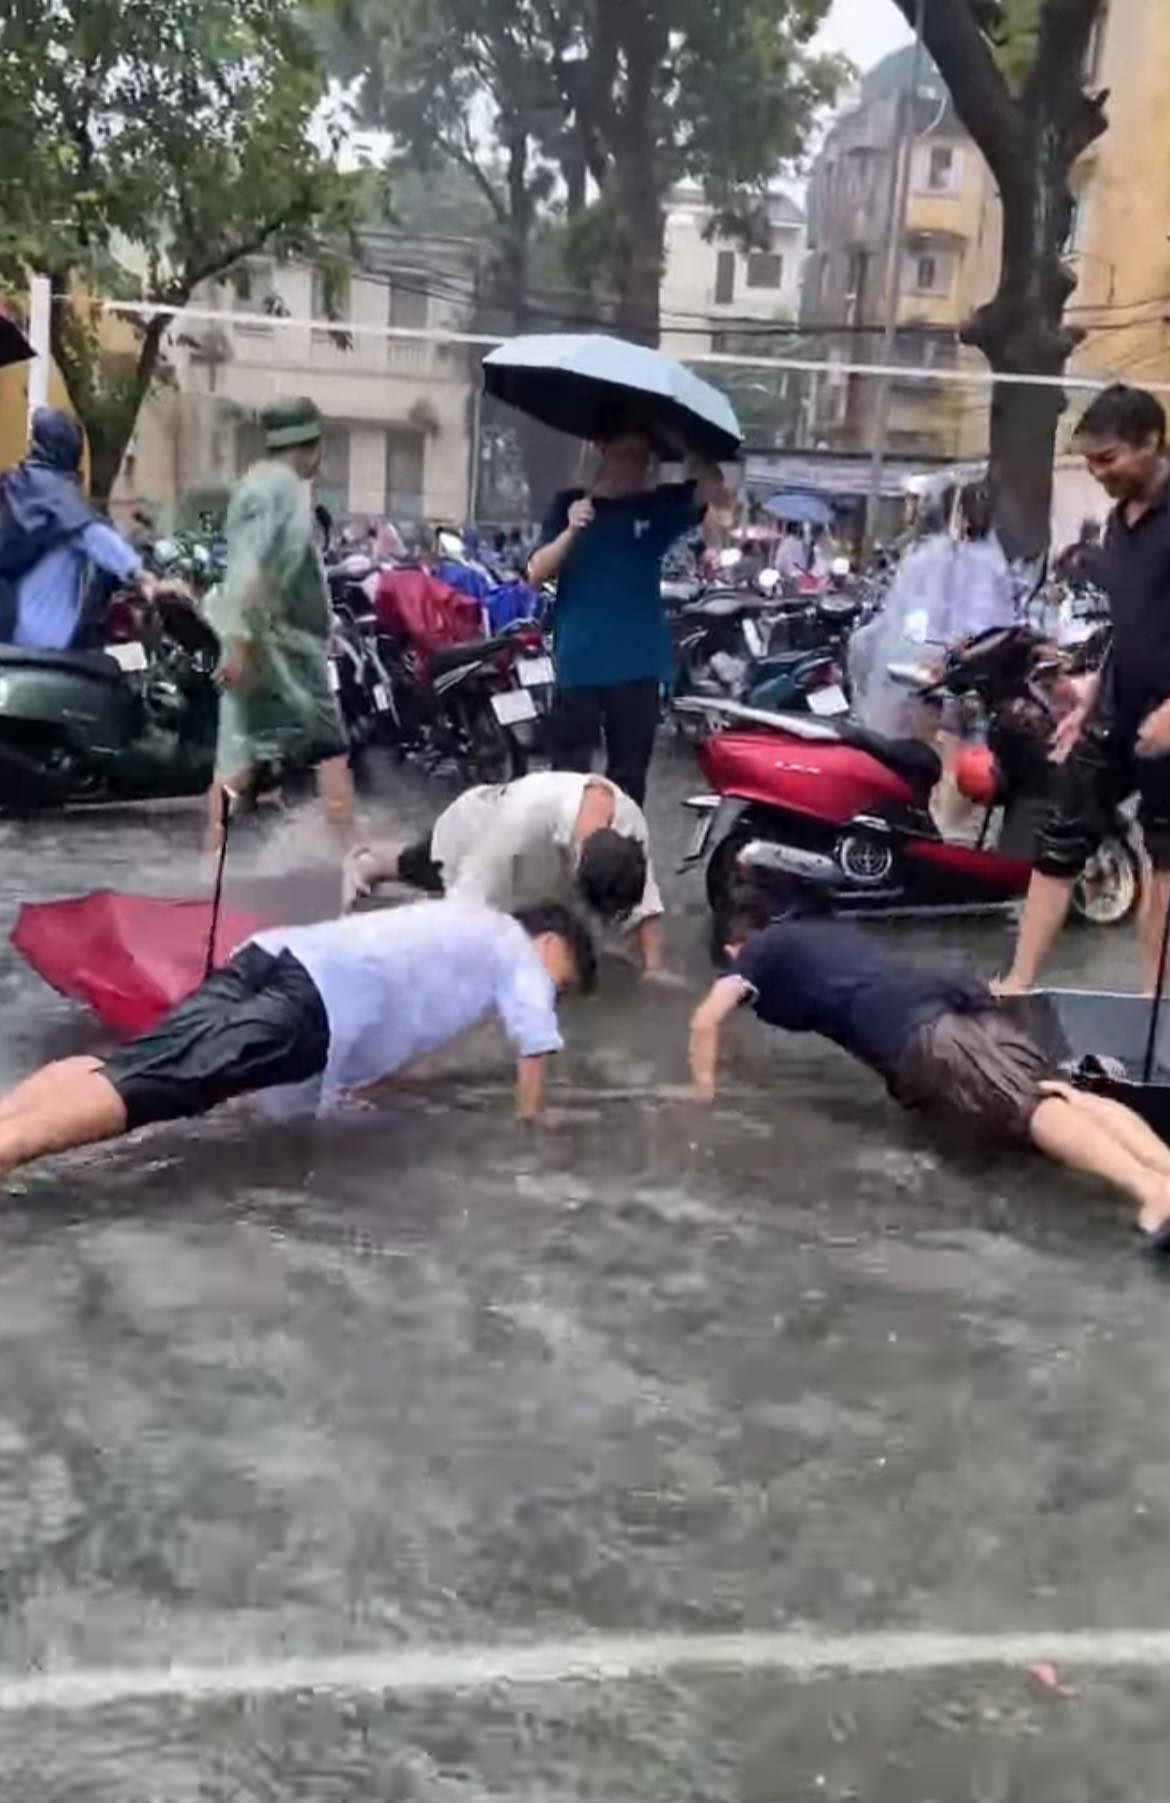 Hà Nội mưa ngập các trường học: Học sinh tung tăng bơi lội dưới sân, cô giáo ngồi tát nước - Ảnh 3.